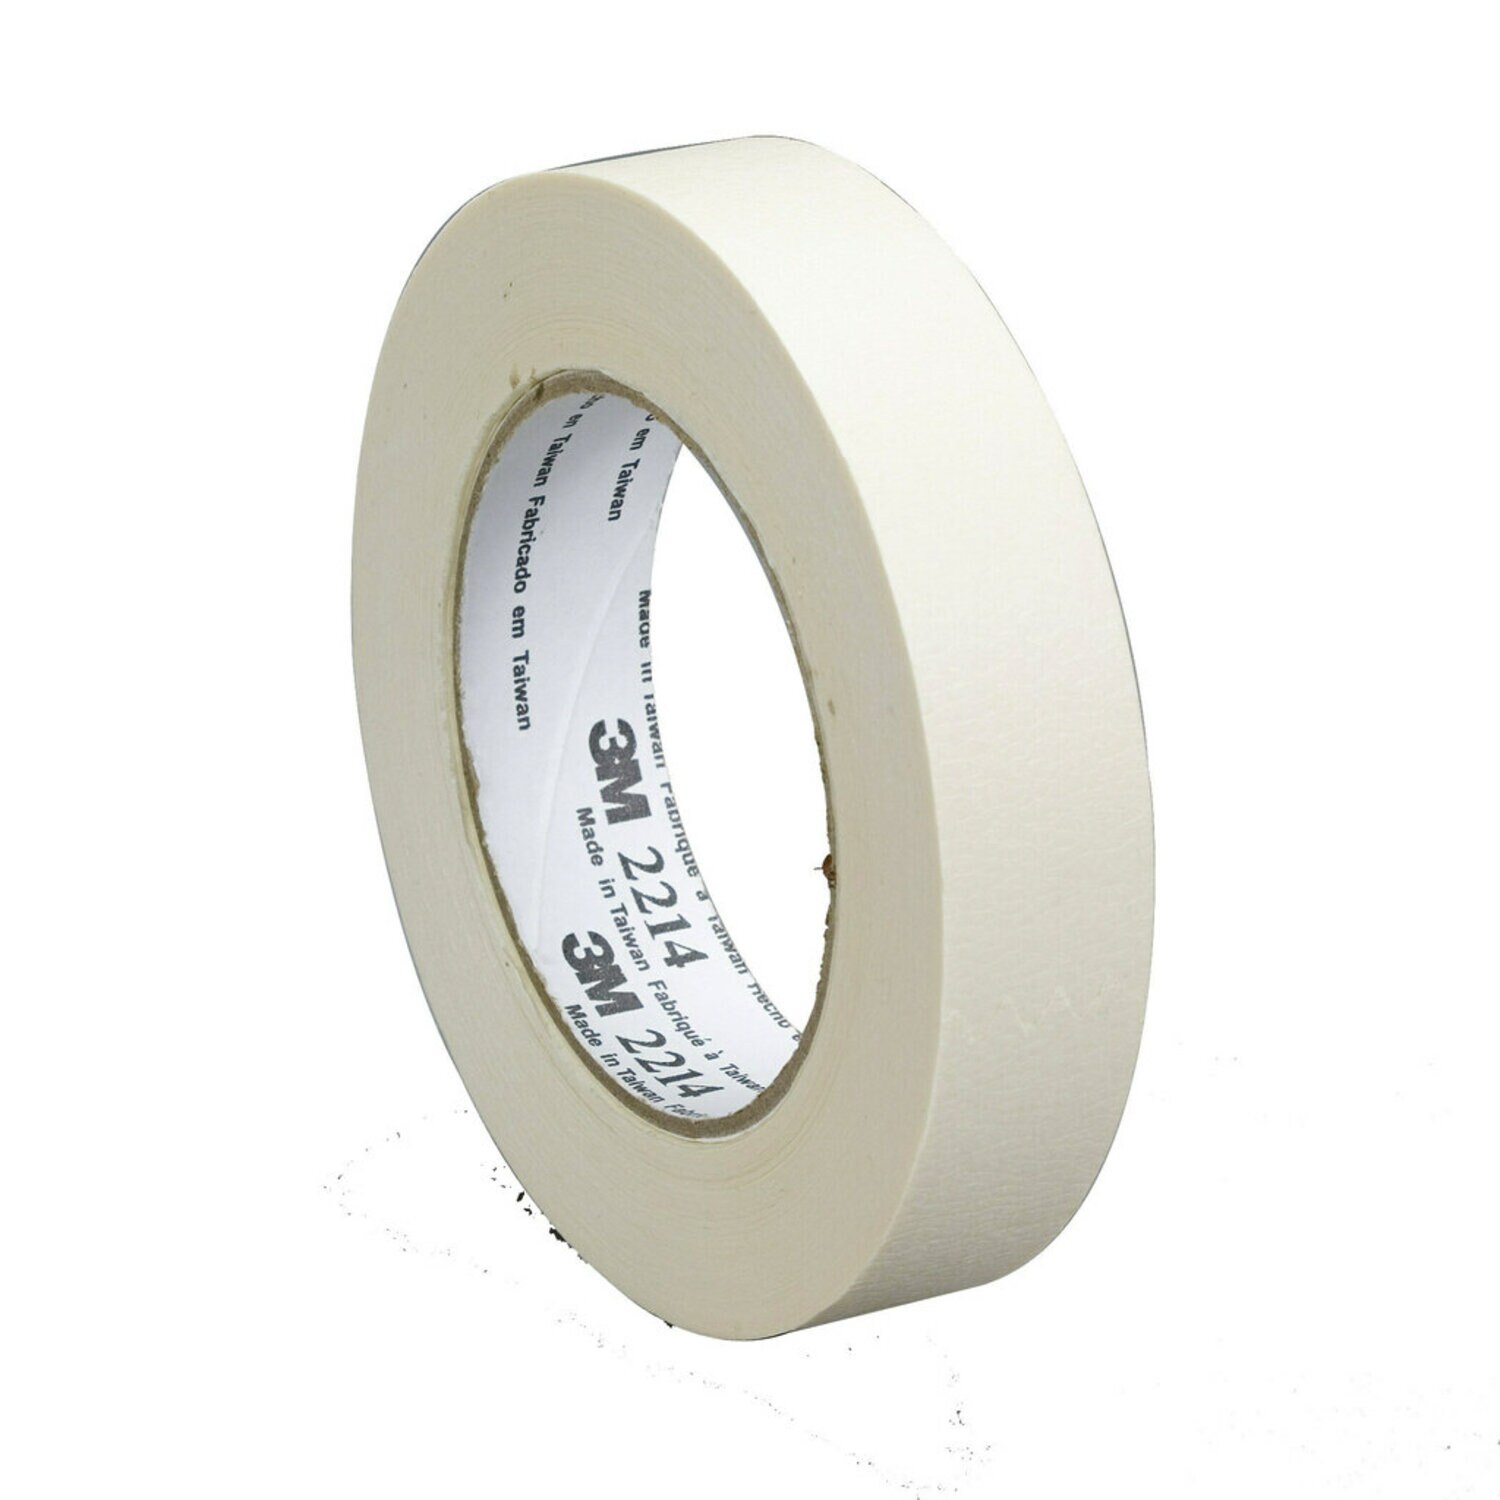 7100245640 - 3M Paper Masking Tape 2214, Tan, 12 mm x 50 m, 5.4 mil, 72 Rolls/Case